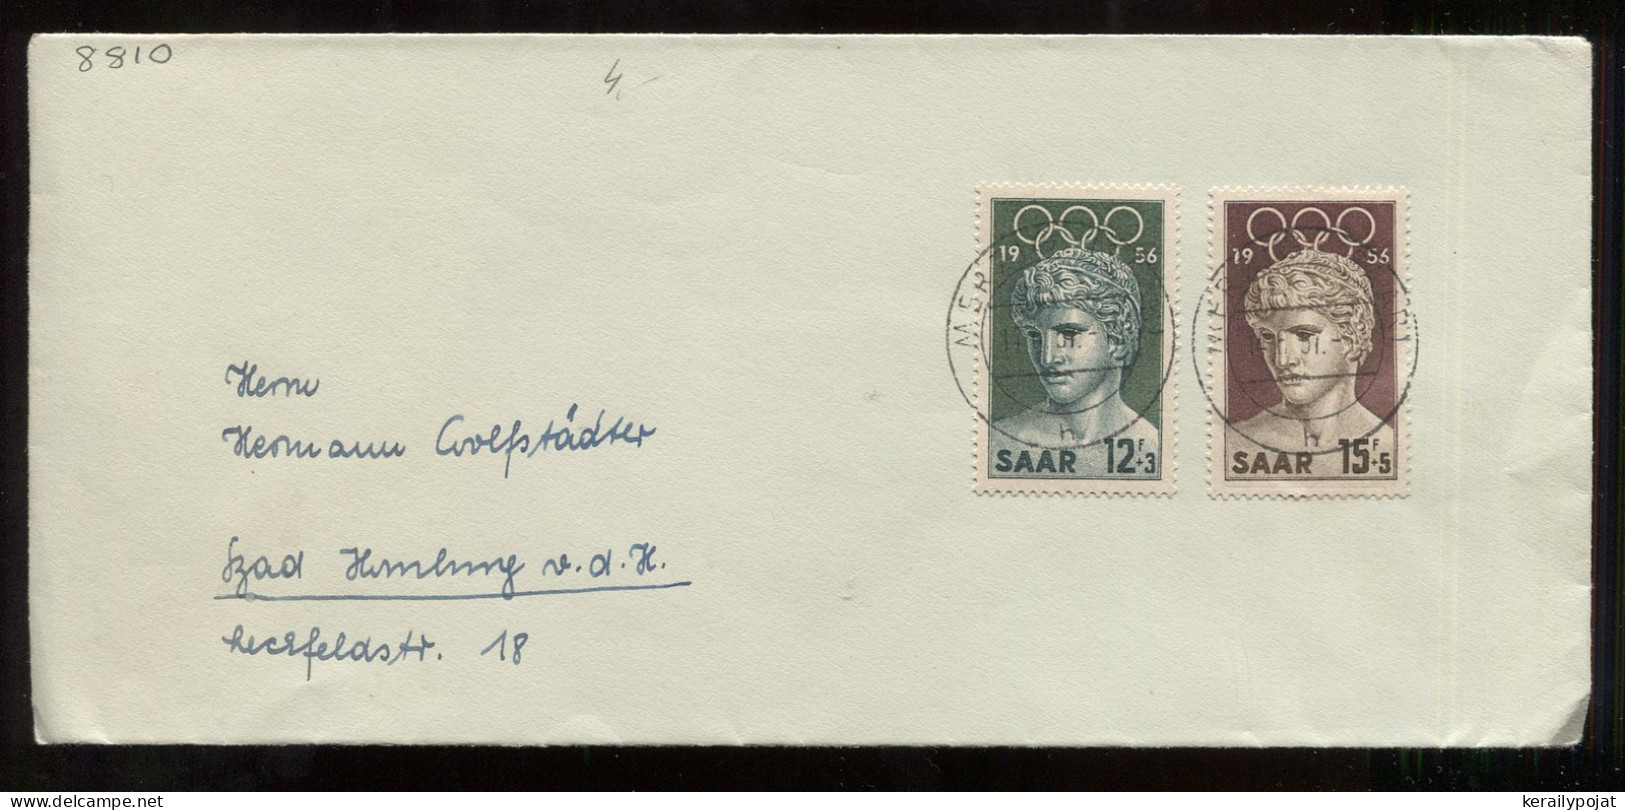 Saar 1957 Merzig Olympic Stamp Cover__(8810) - Briefe U. Dokumente